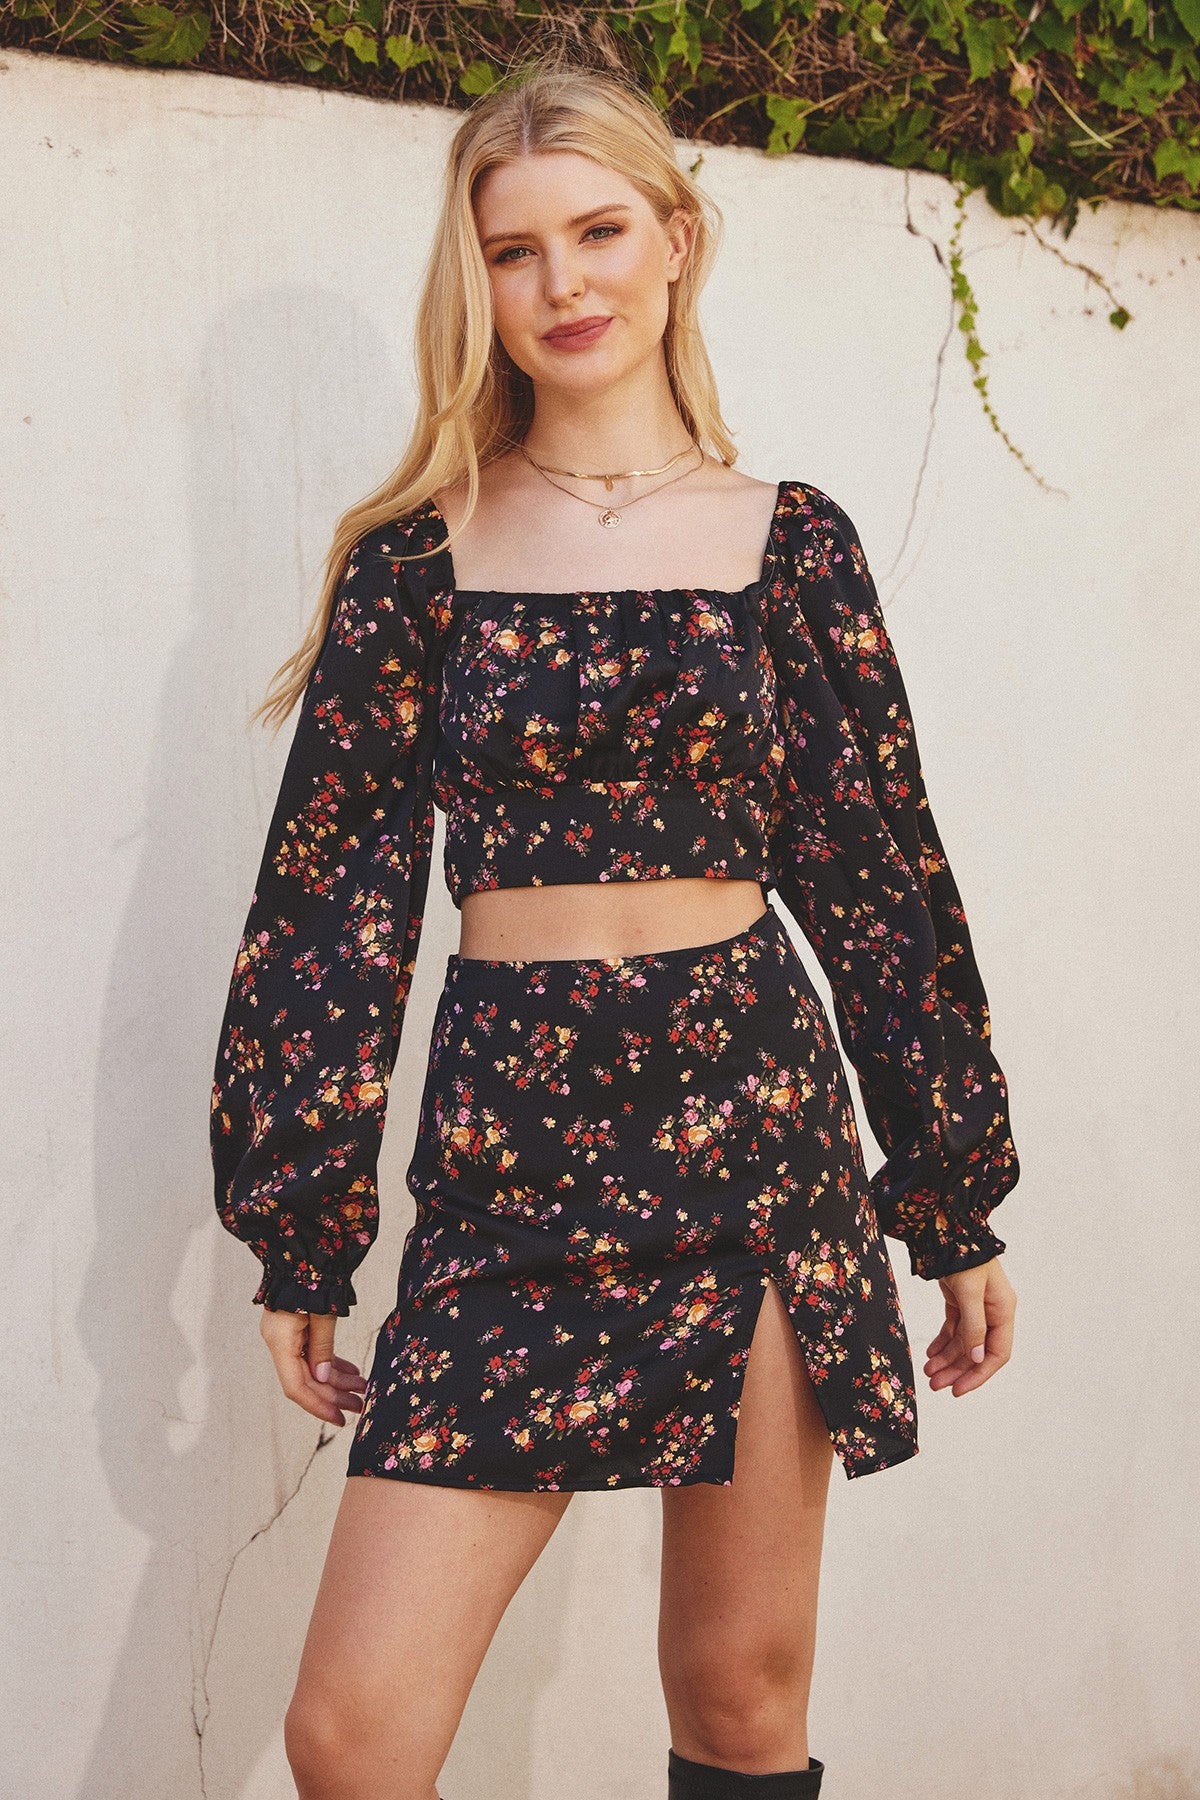 Dress Forum Black Floral Mini Skirt | Sweetest Stitch Online Boutique